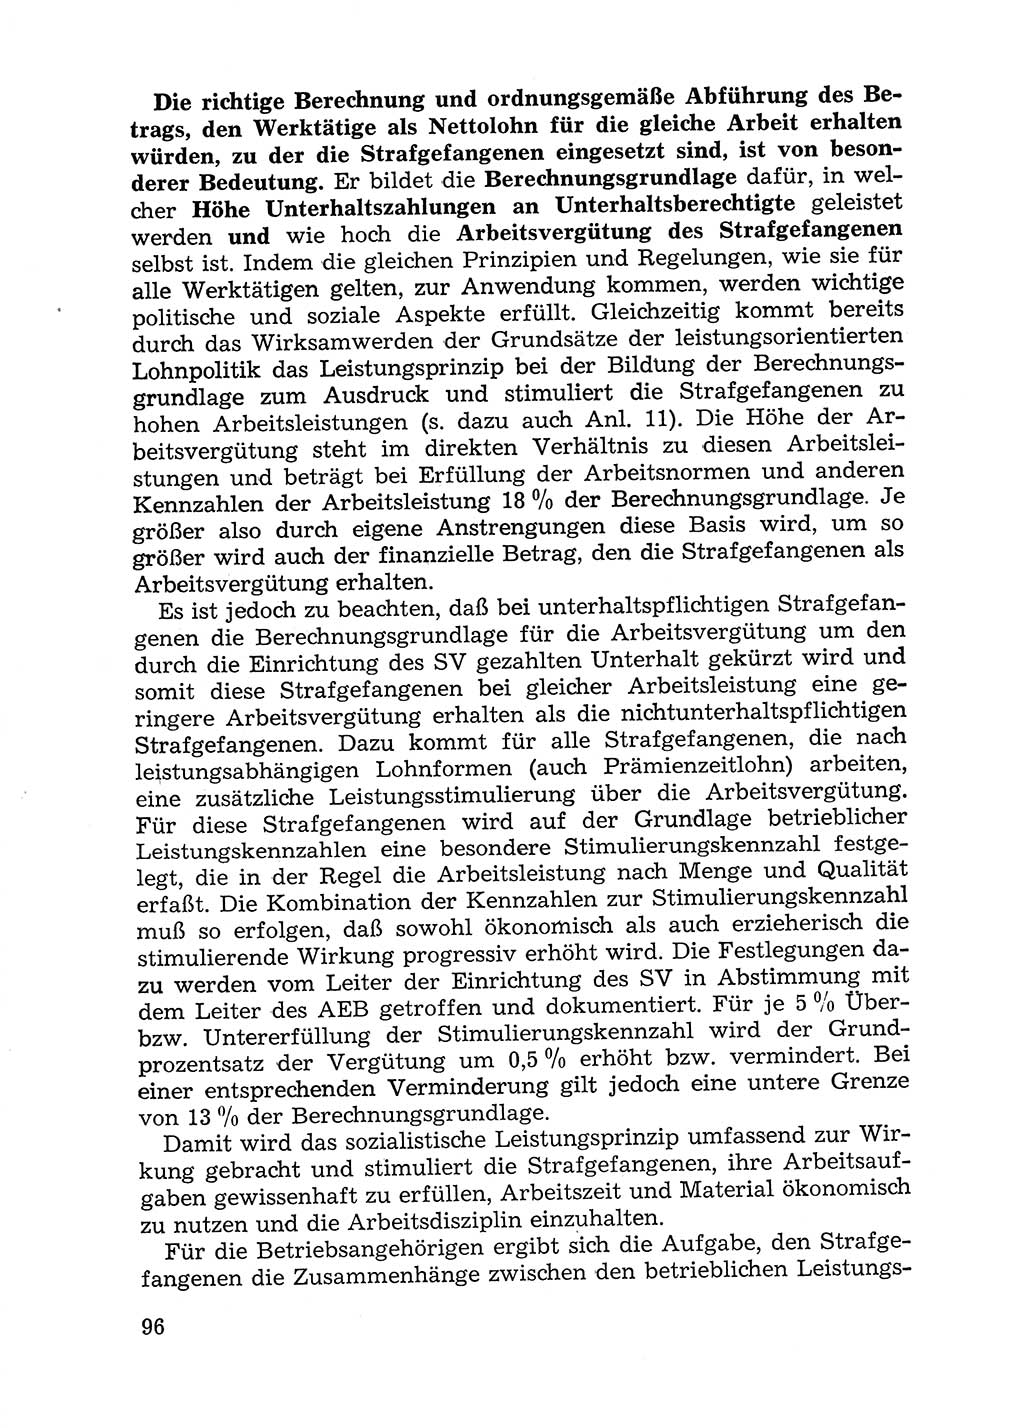 Handbuch für Betriebsangehörige, Abteilung Strafvollzug (SV) [Ministerium des Innern (MdI) Deutsche Demokratische Republik (DDR)] 1981, Seite 96 (Hb. BA Abt. SV MdI DDR 1981, S. 96)